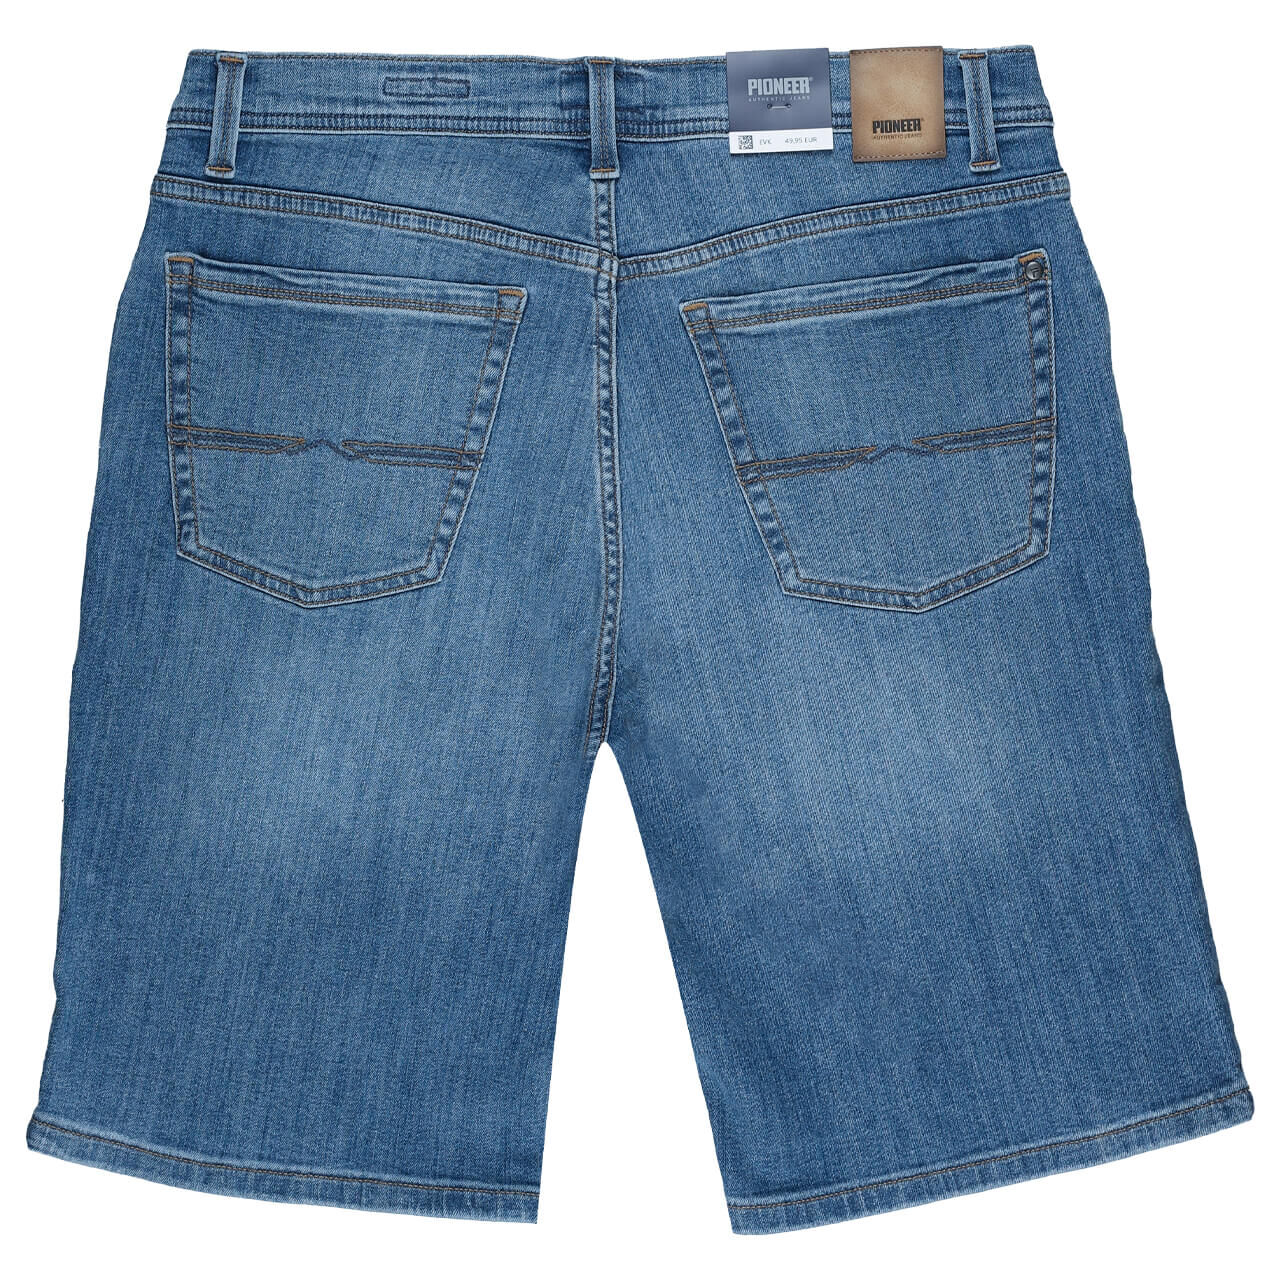 Pioneer Finn Jeans Bermuda Megaflex blue used